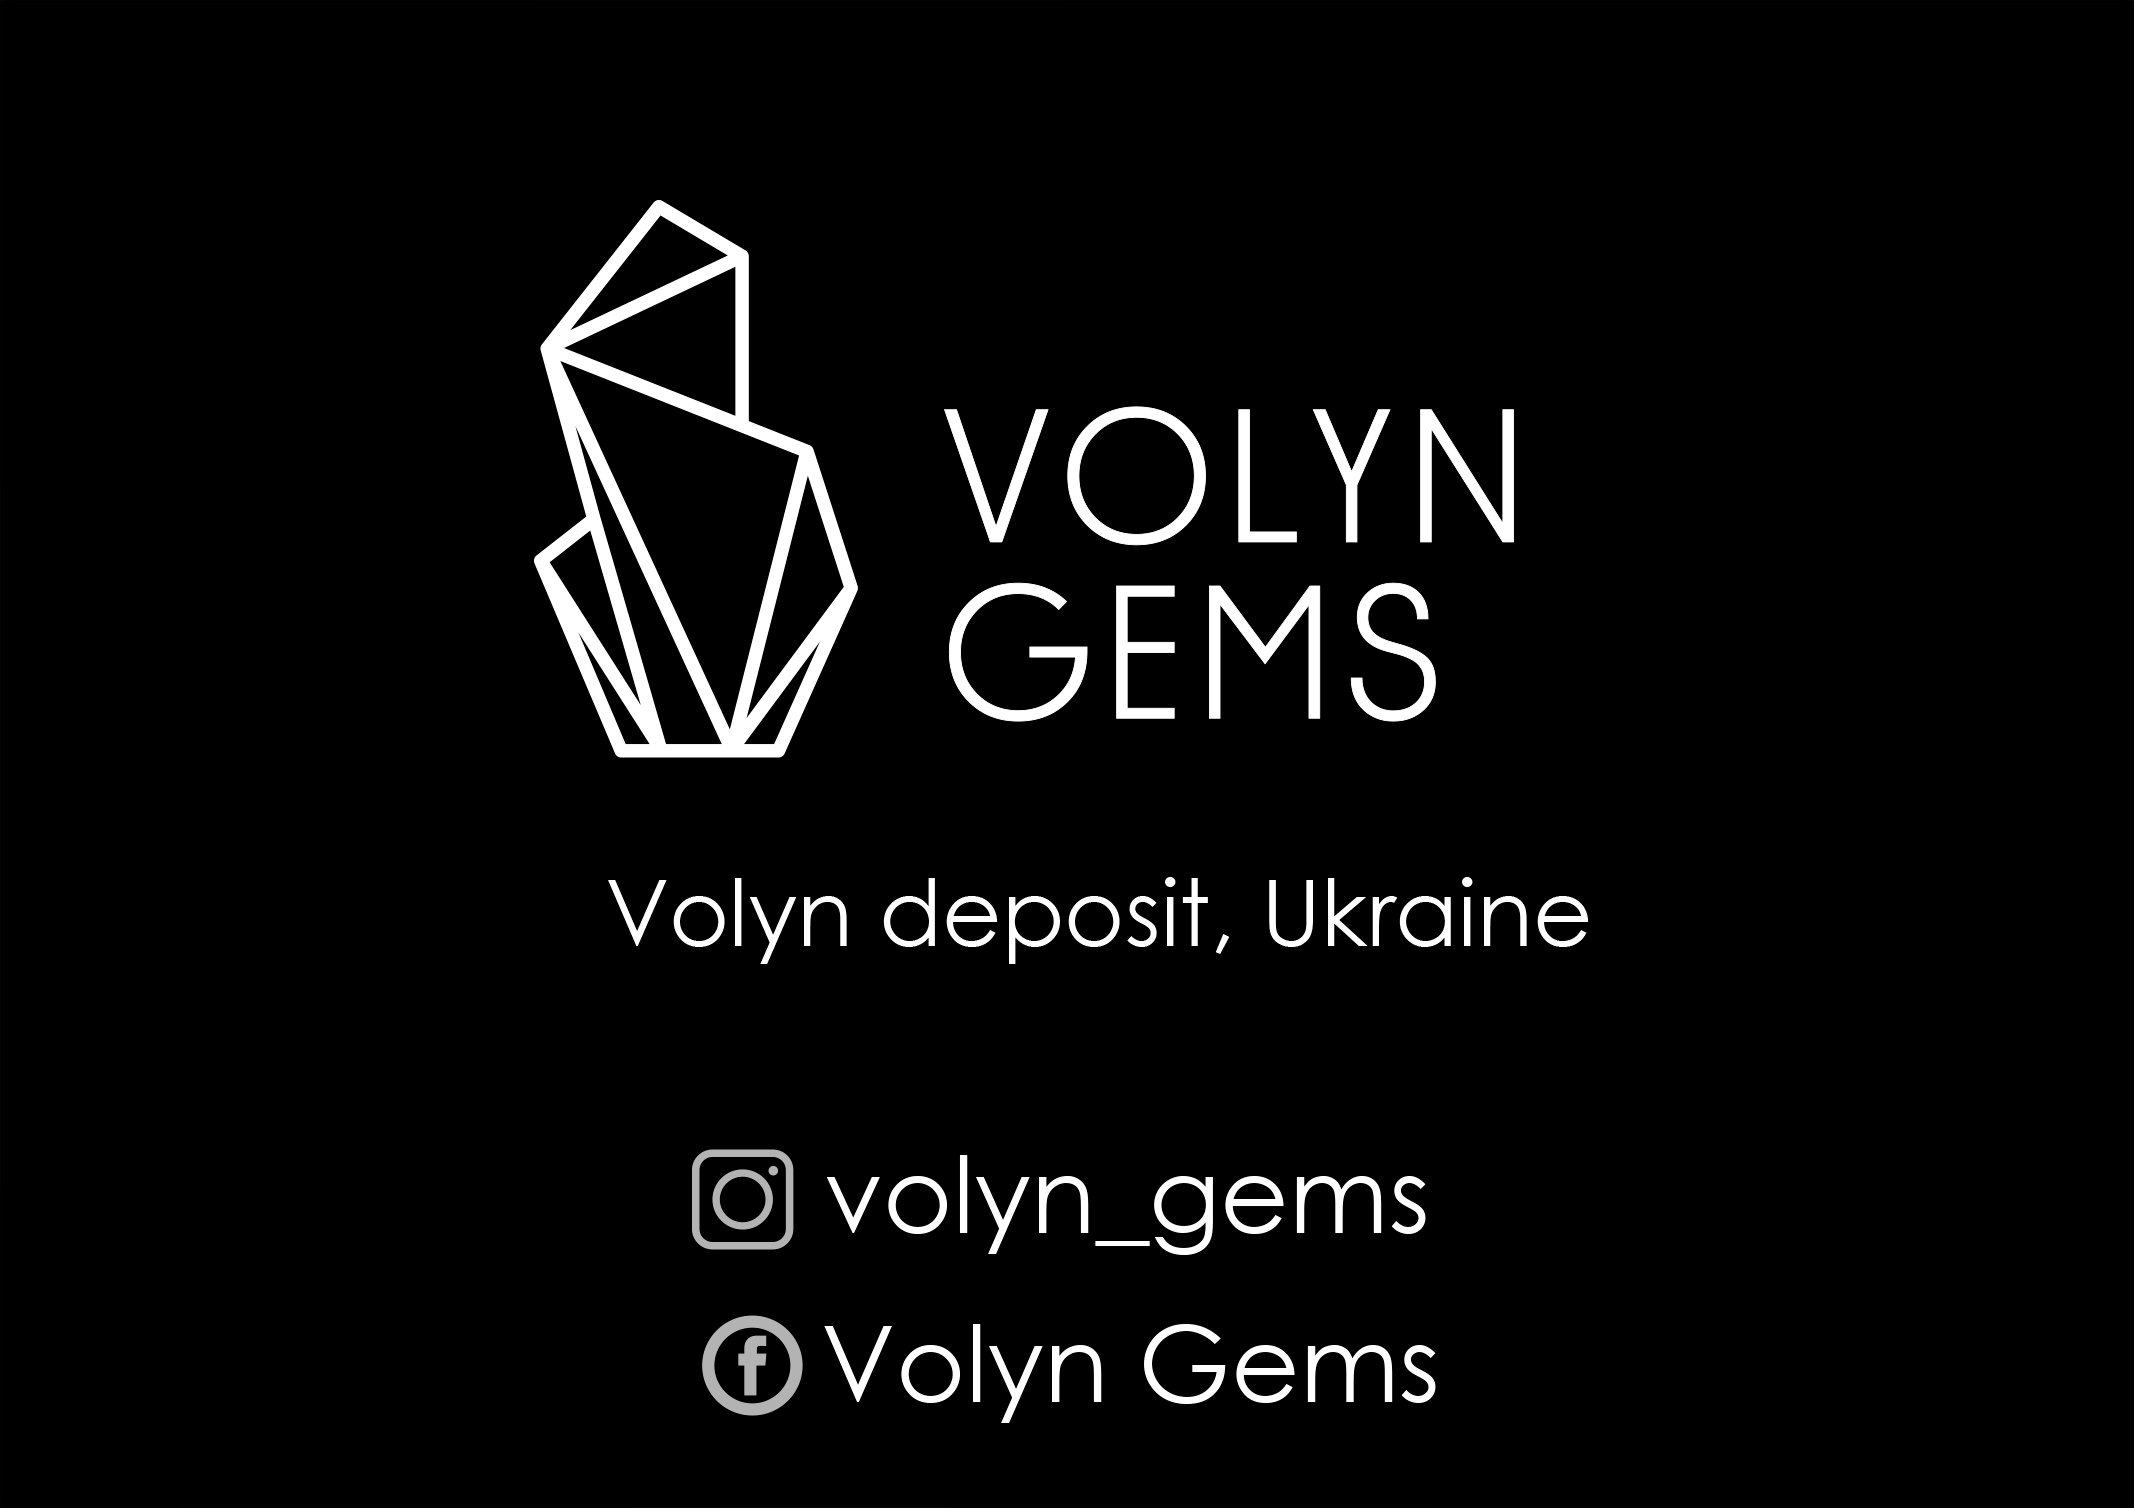 «Volyn Gems» on social media profiles